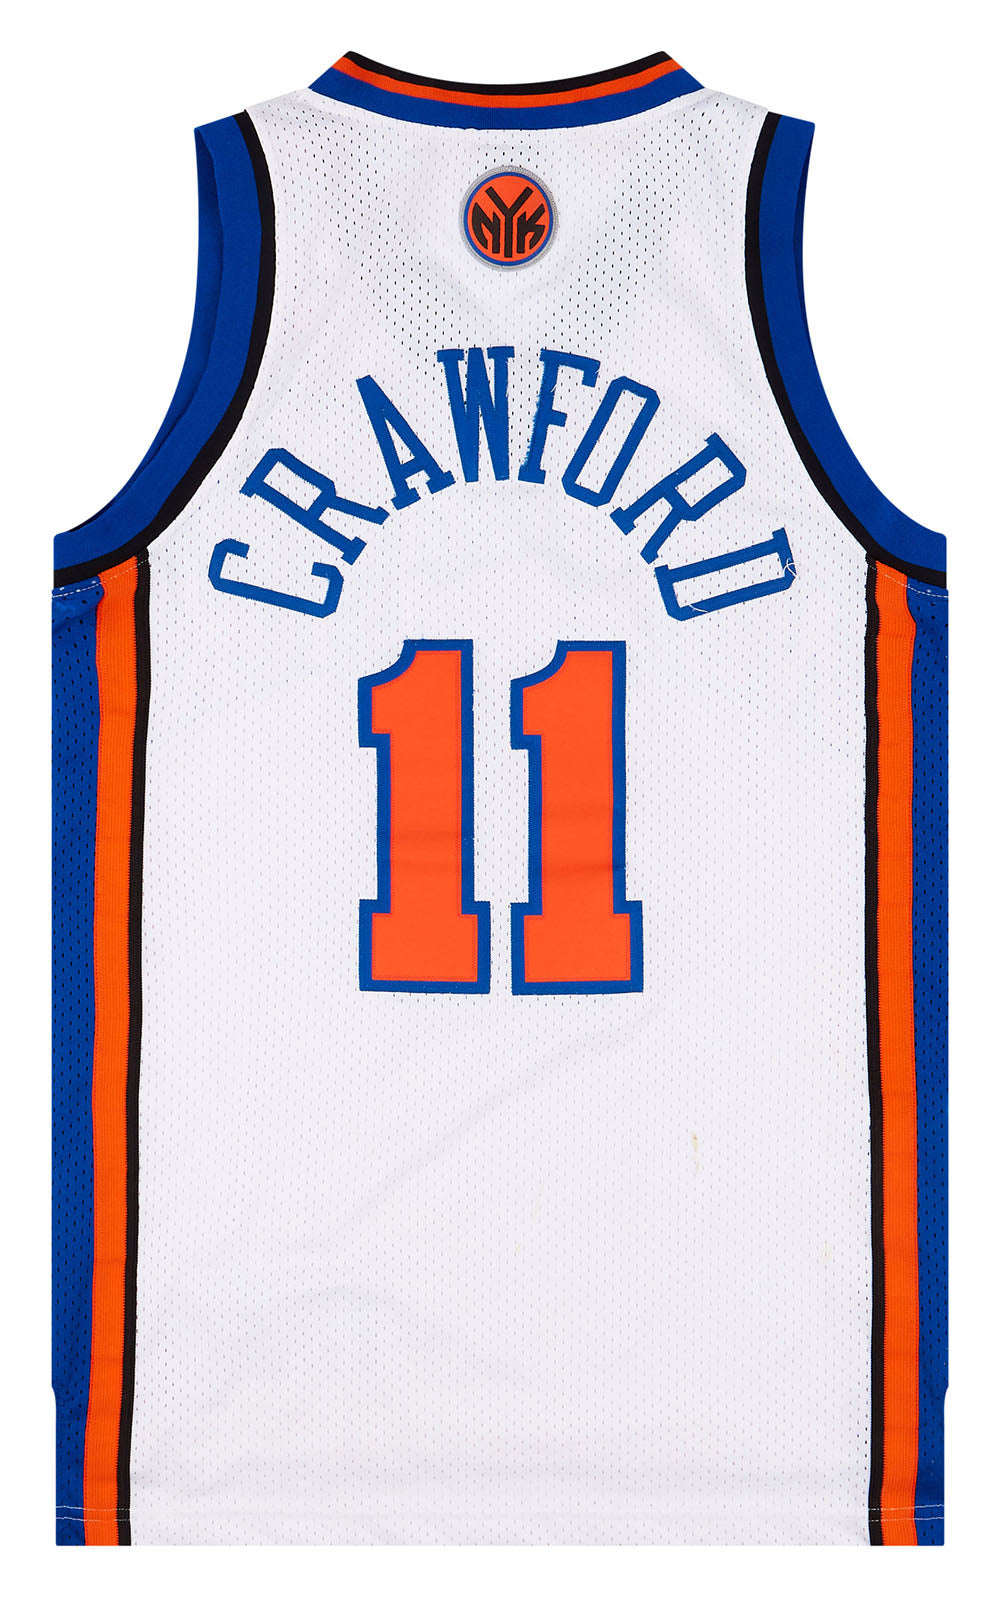 2004-06 NEW YORK KNICKS CRAWFORD #11 REEBOK SWINGMAN JERSEY (HOME) S